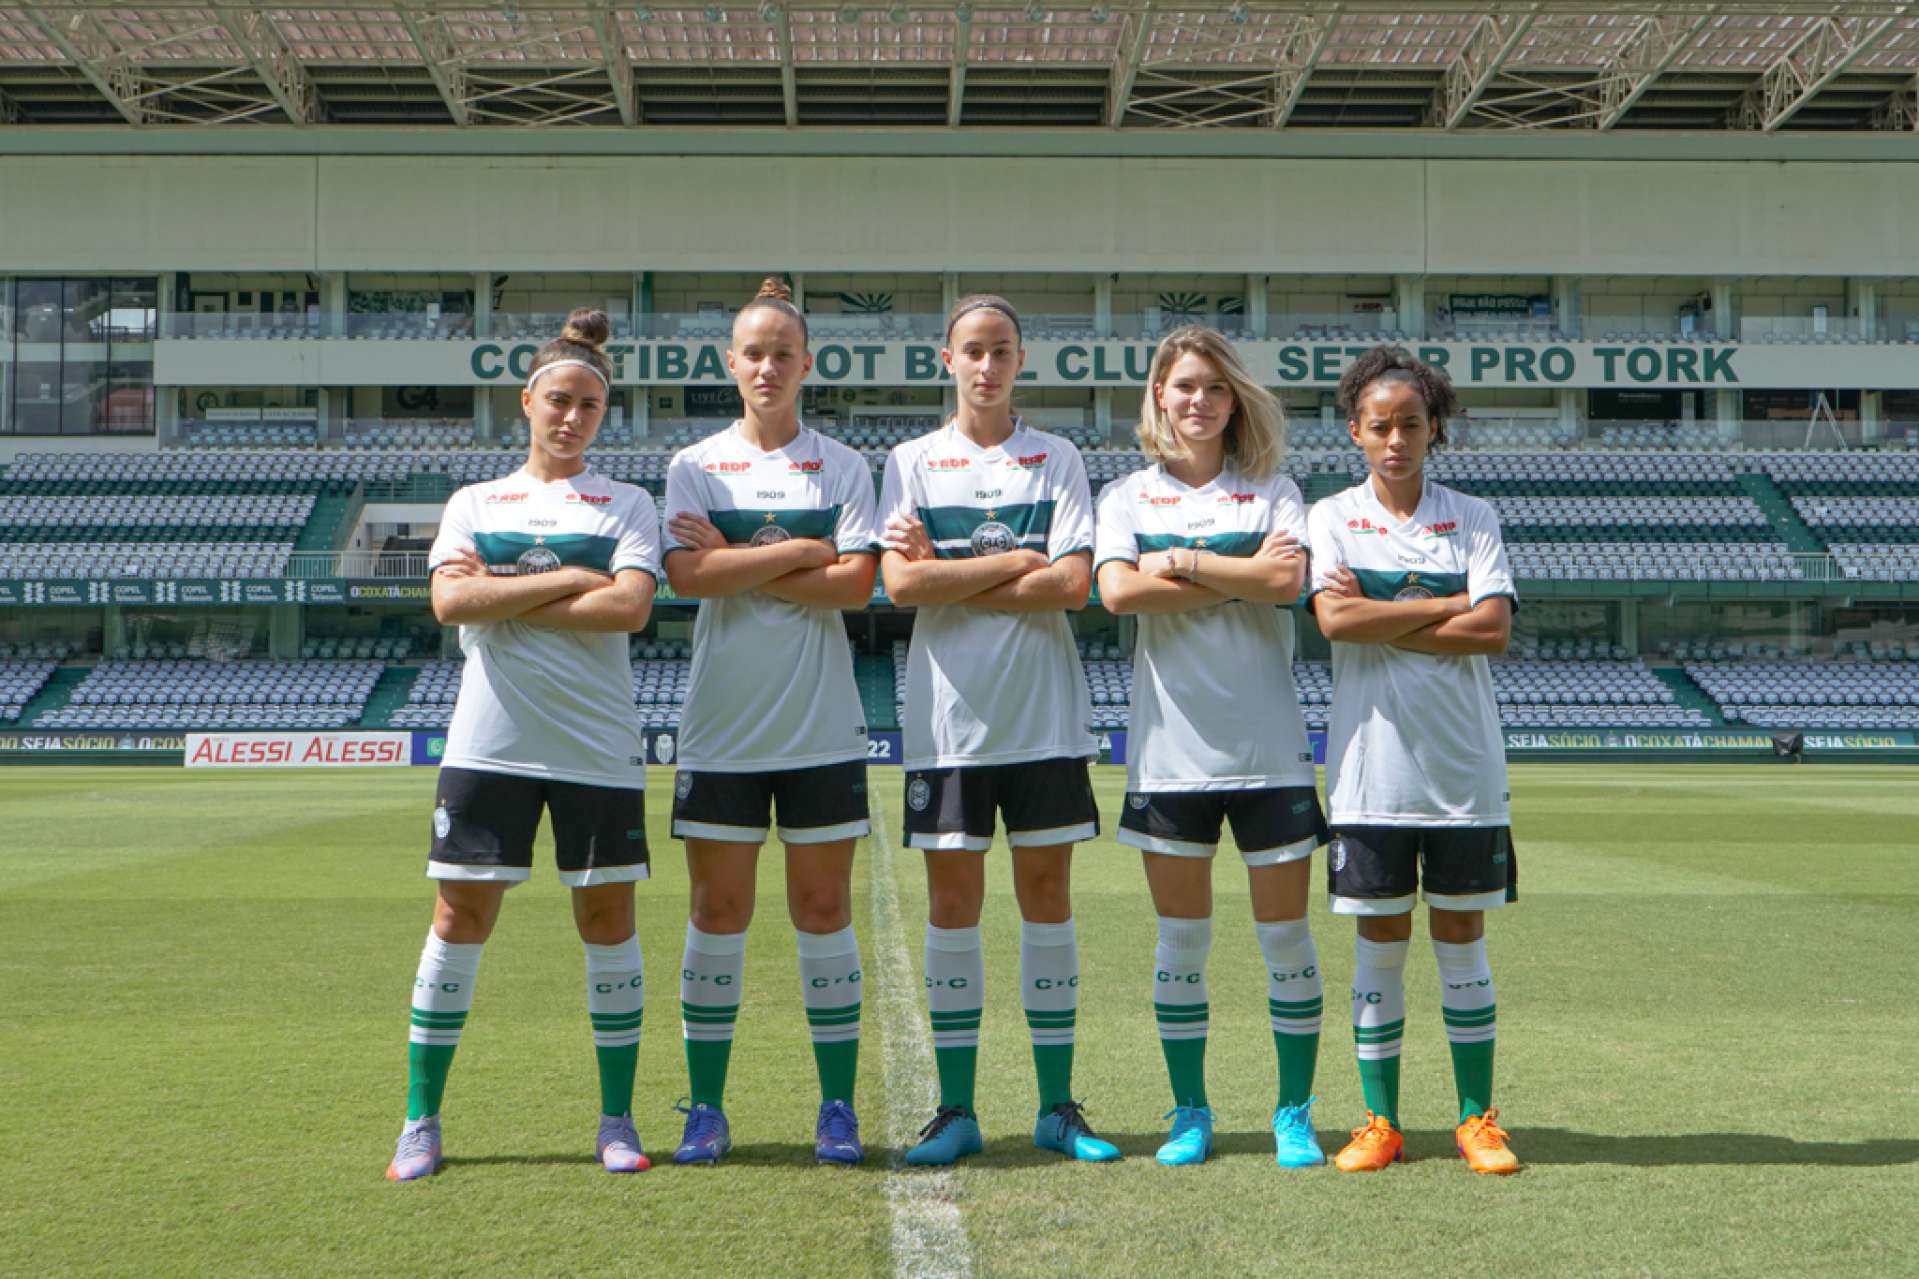 Coxa anuncia novo time de futebol feminino